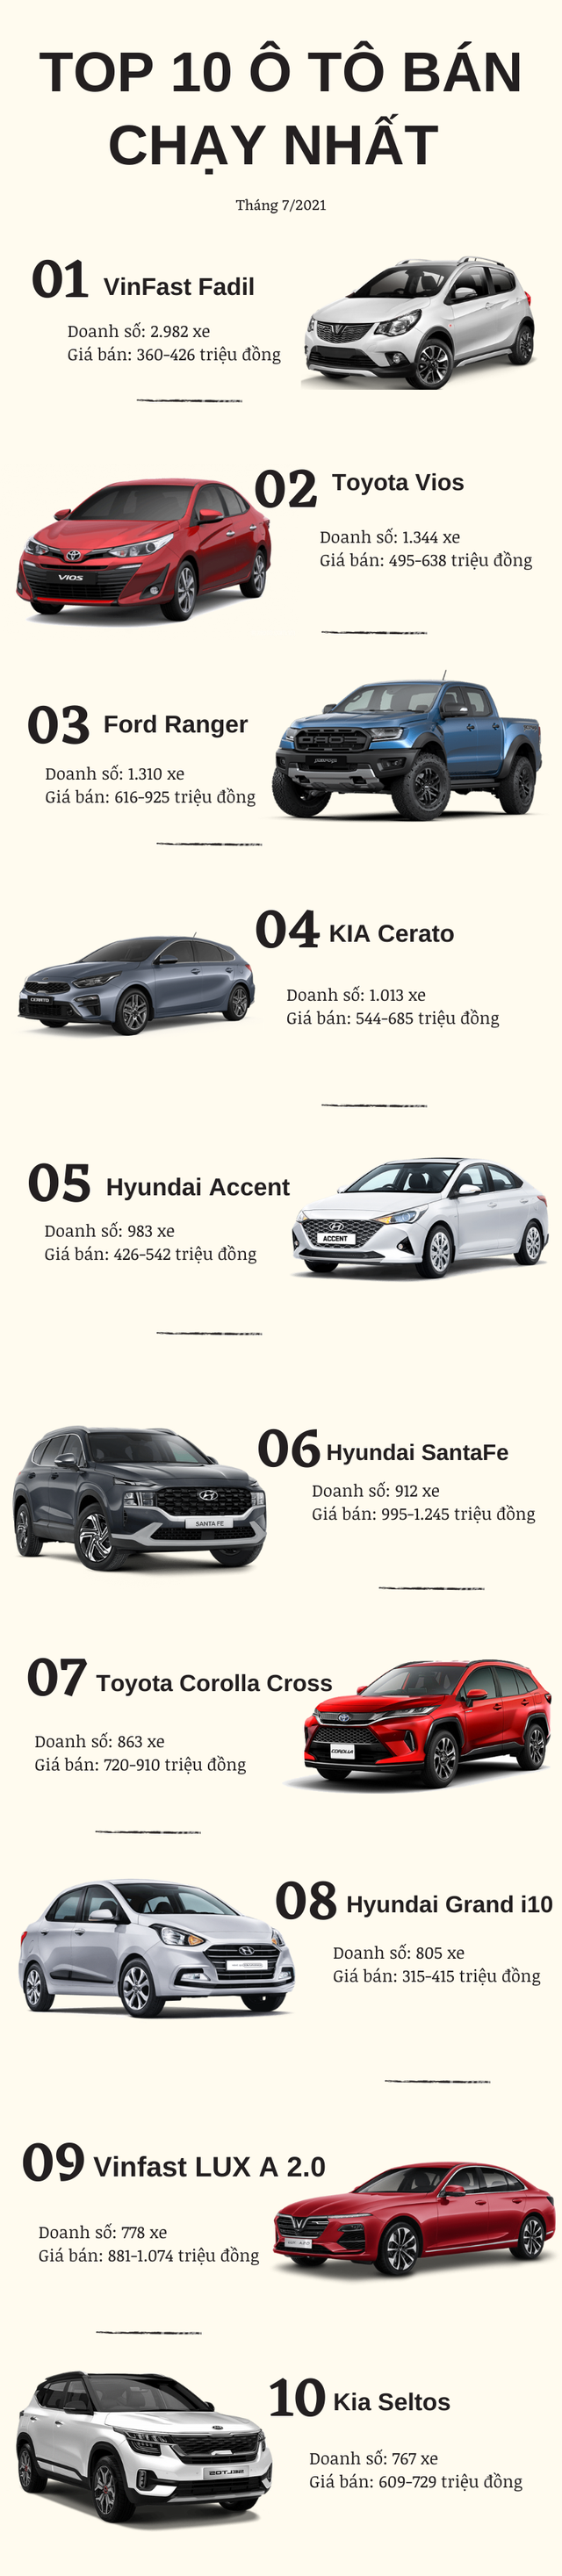 Top 10 ô tô bán chạy nhất tháng 7/2021: VinFast góp mặt 2 mẫu xe, Hyundai Accent bất ngờ tụt hạng - Ảnh 1.